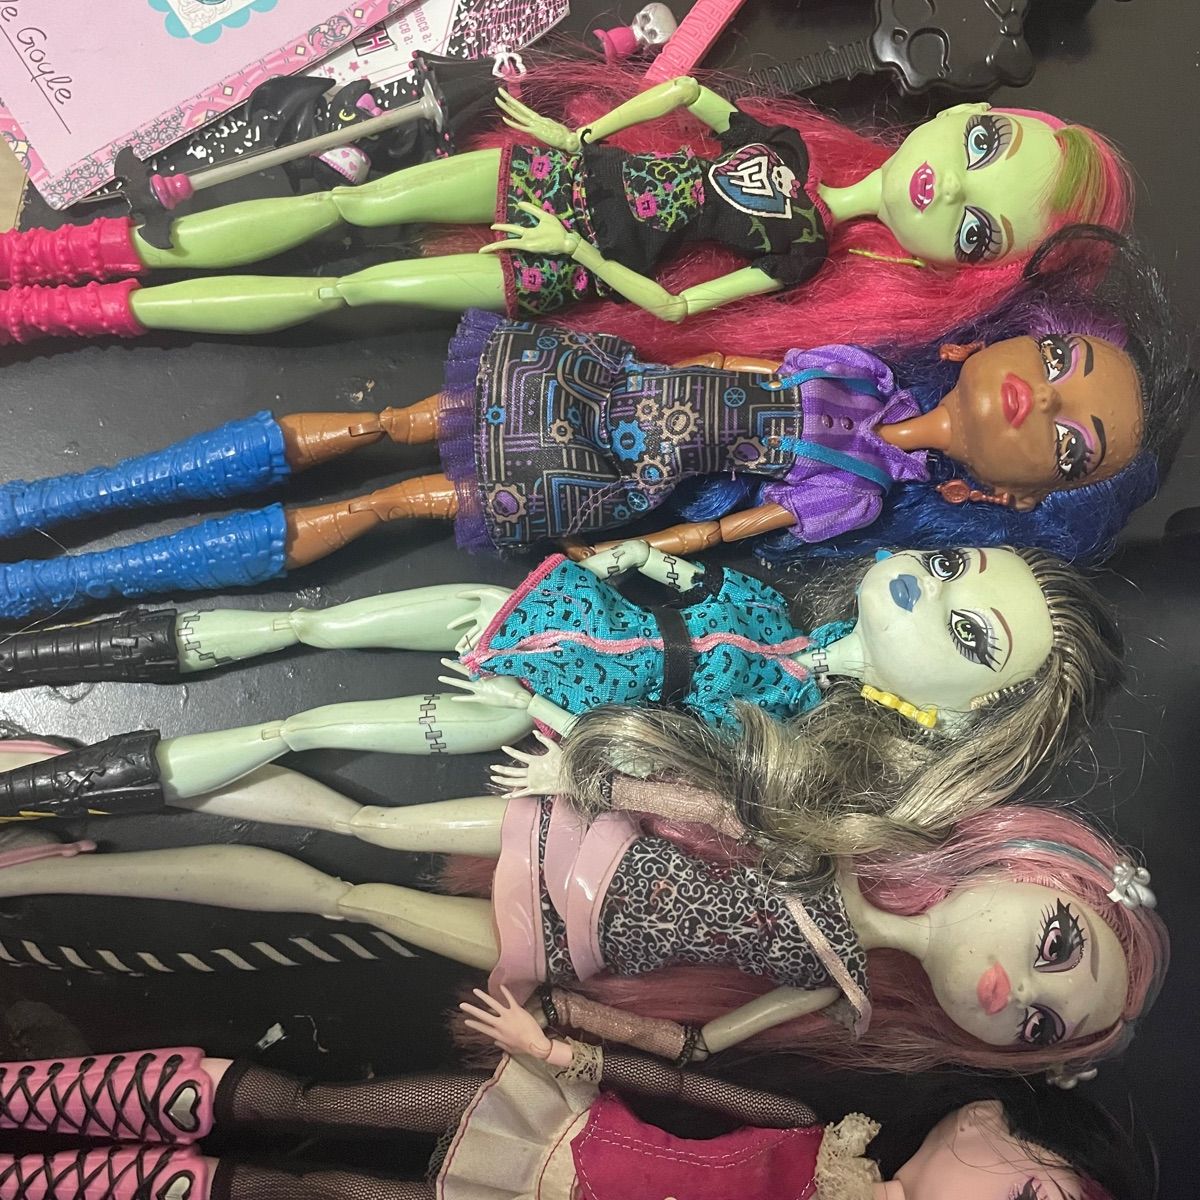 Lote de 13 bonecas Monster High